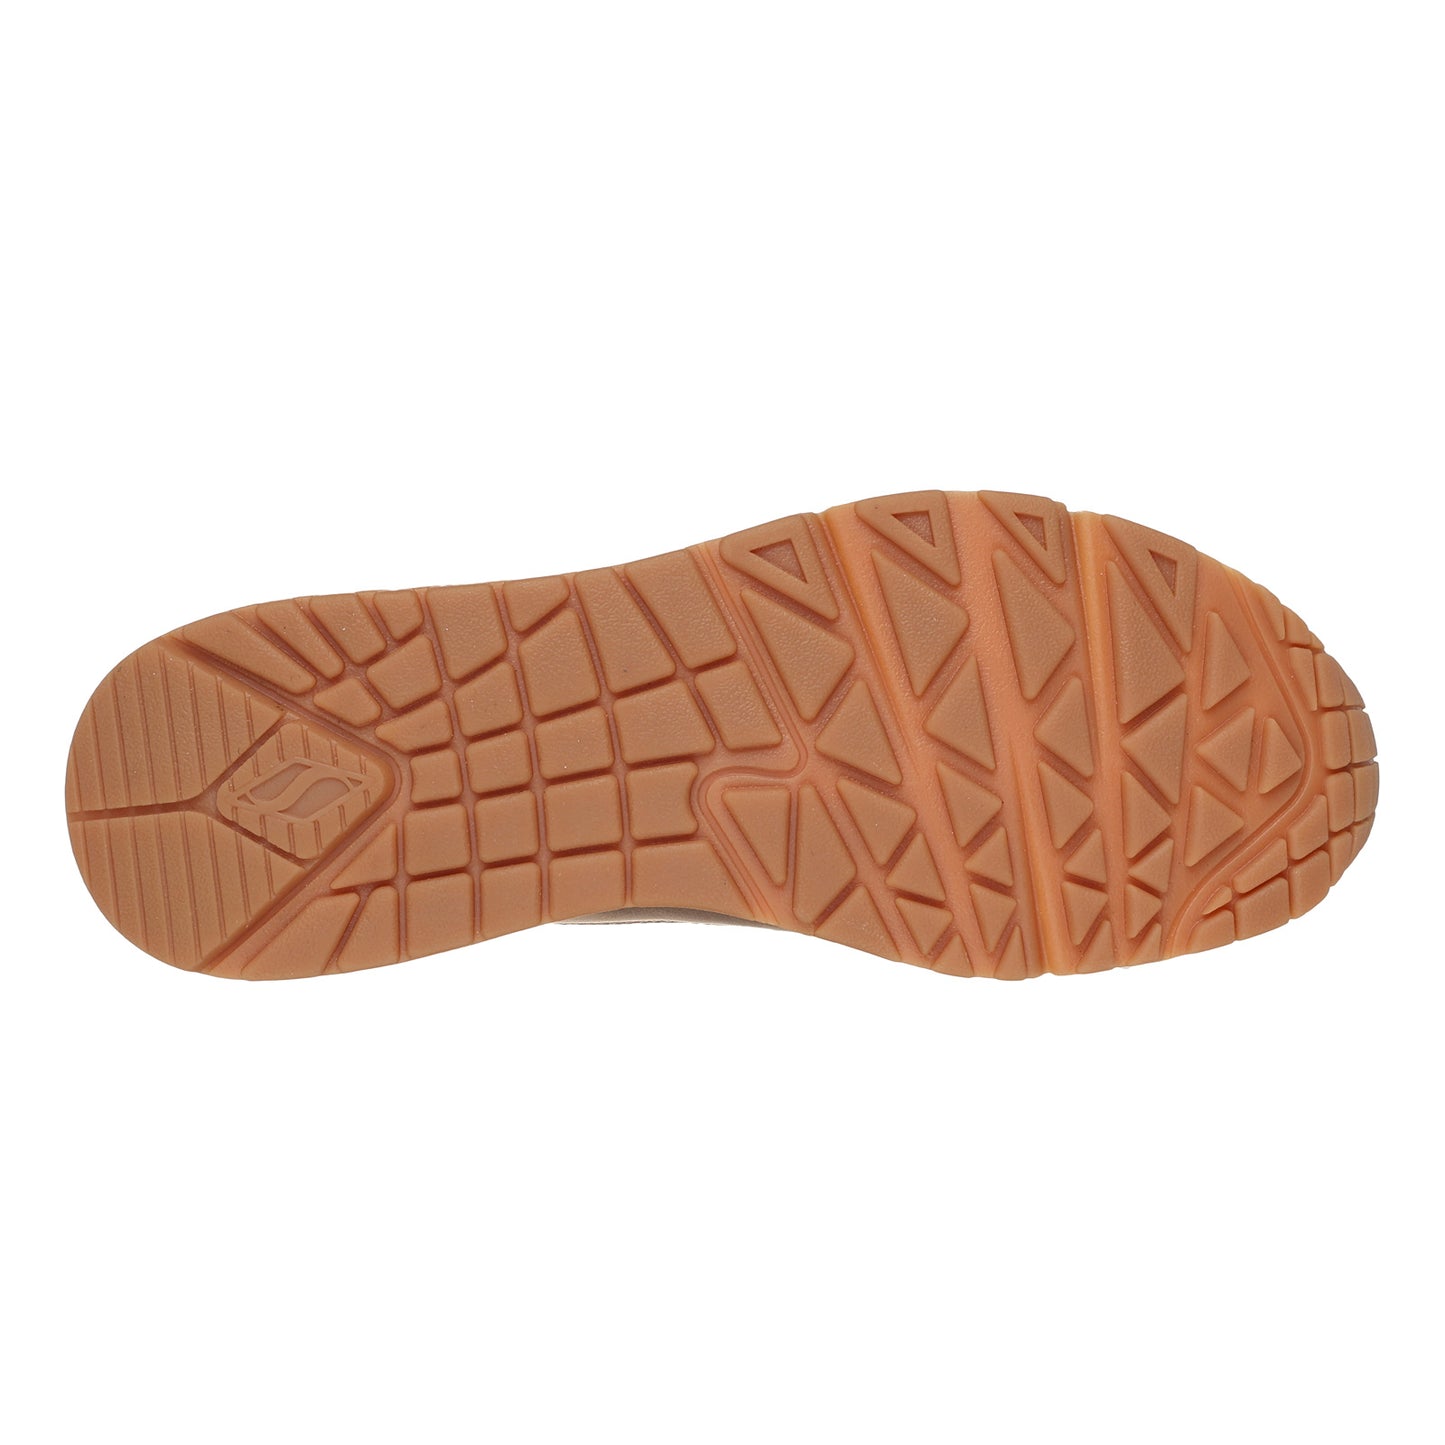 Peltz Shoes  Women's Skechers Street Uno – Metallixs Sneaker Rose/Gold 177109-RSGD